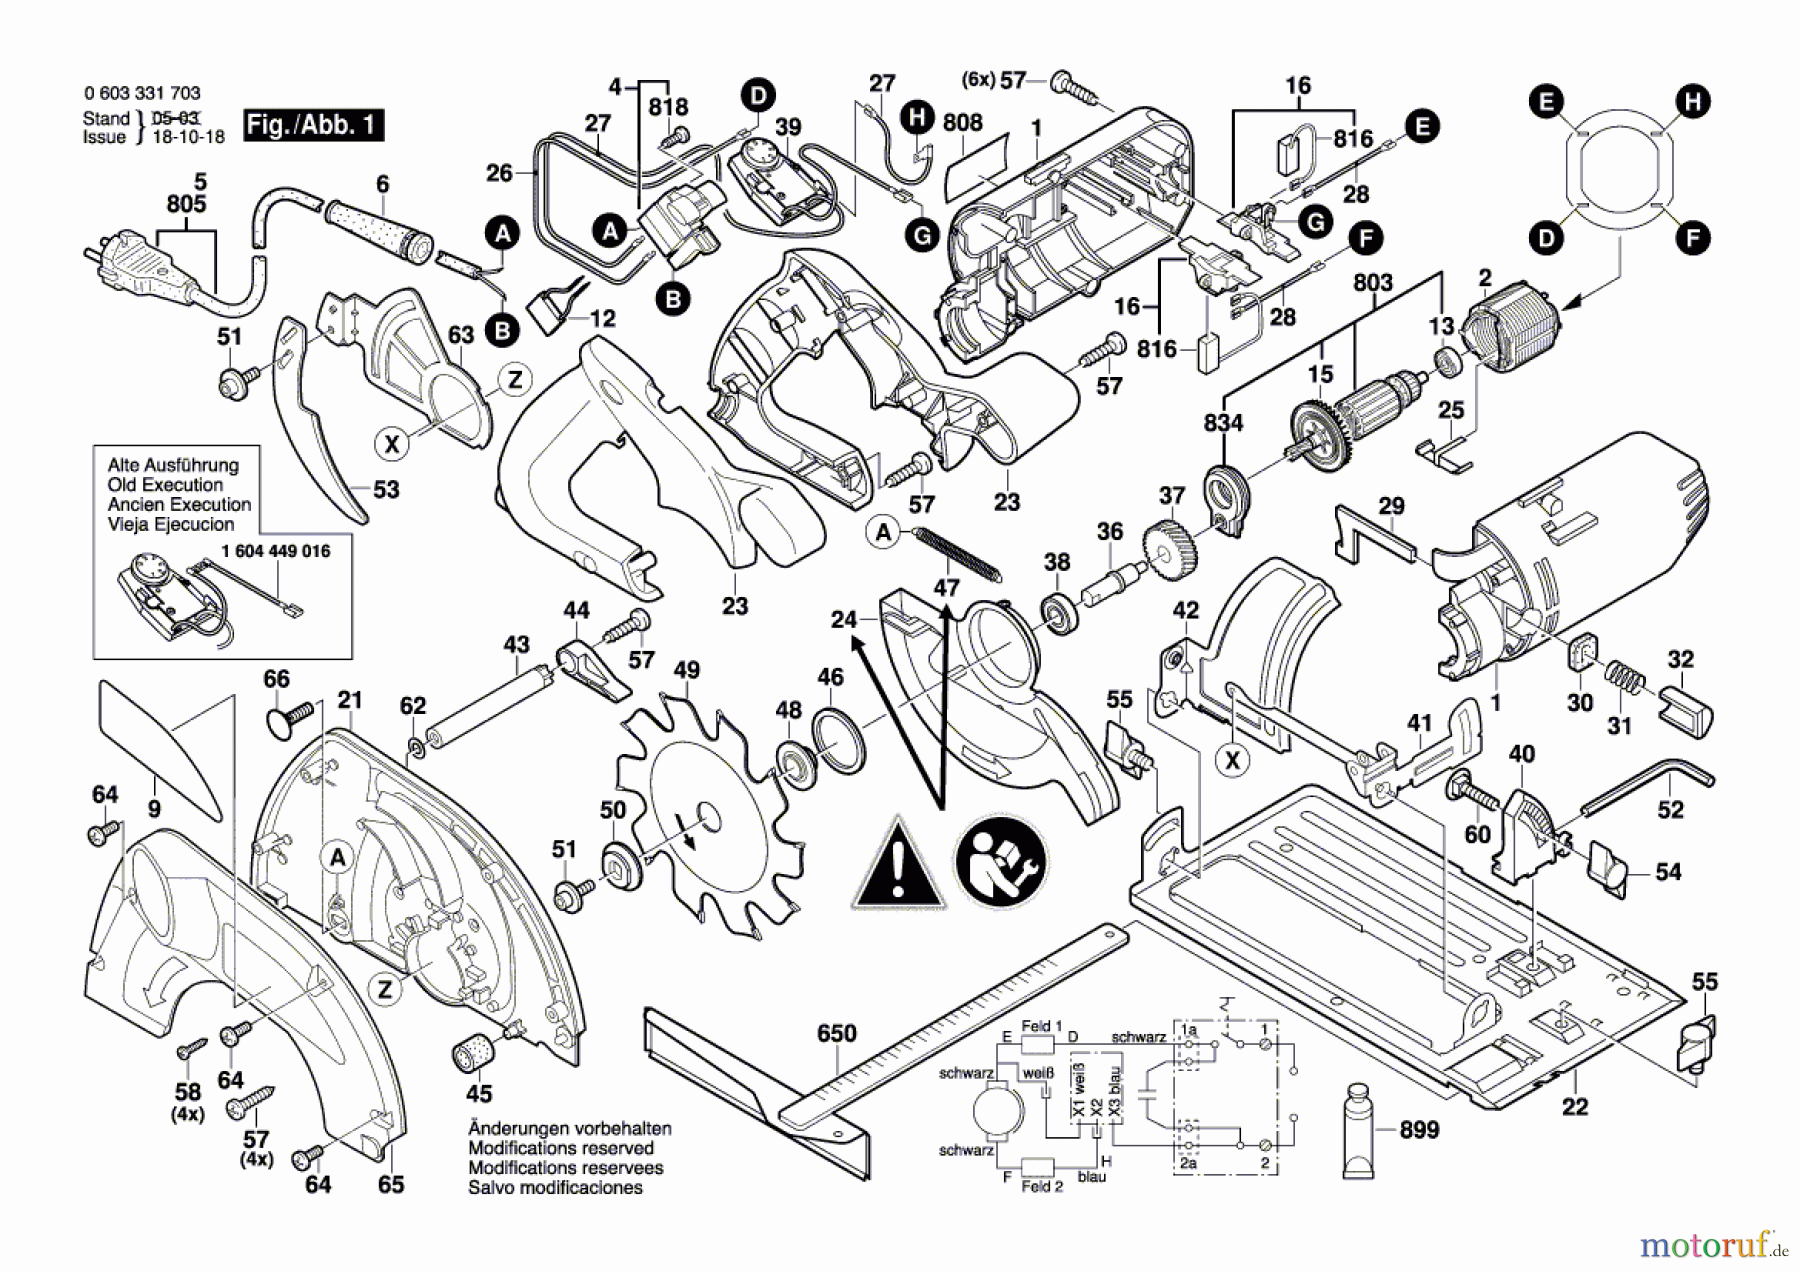  Bosch Werkzeug Handkreissäge PKS 66 CE Seite 1